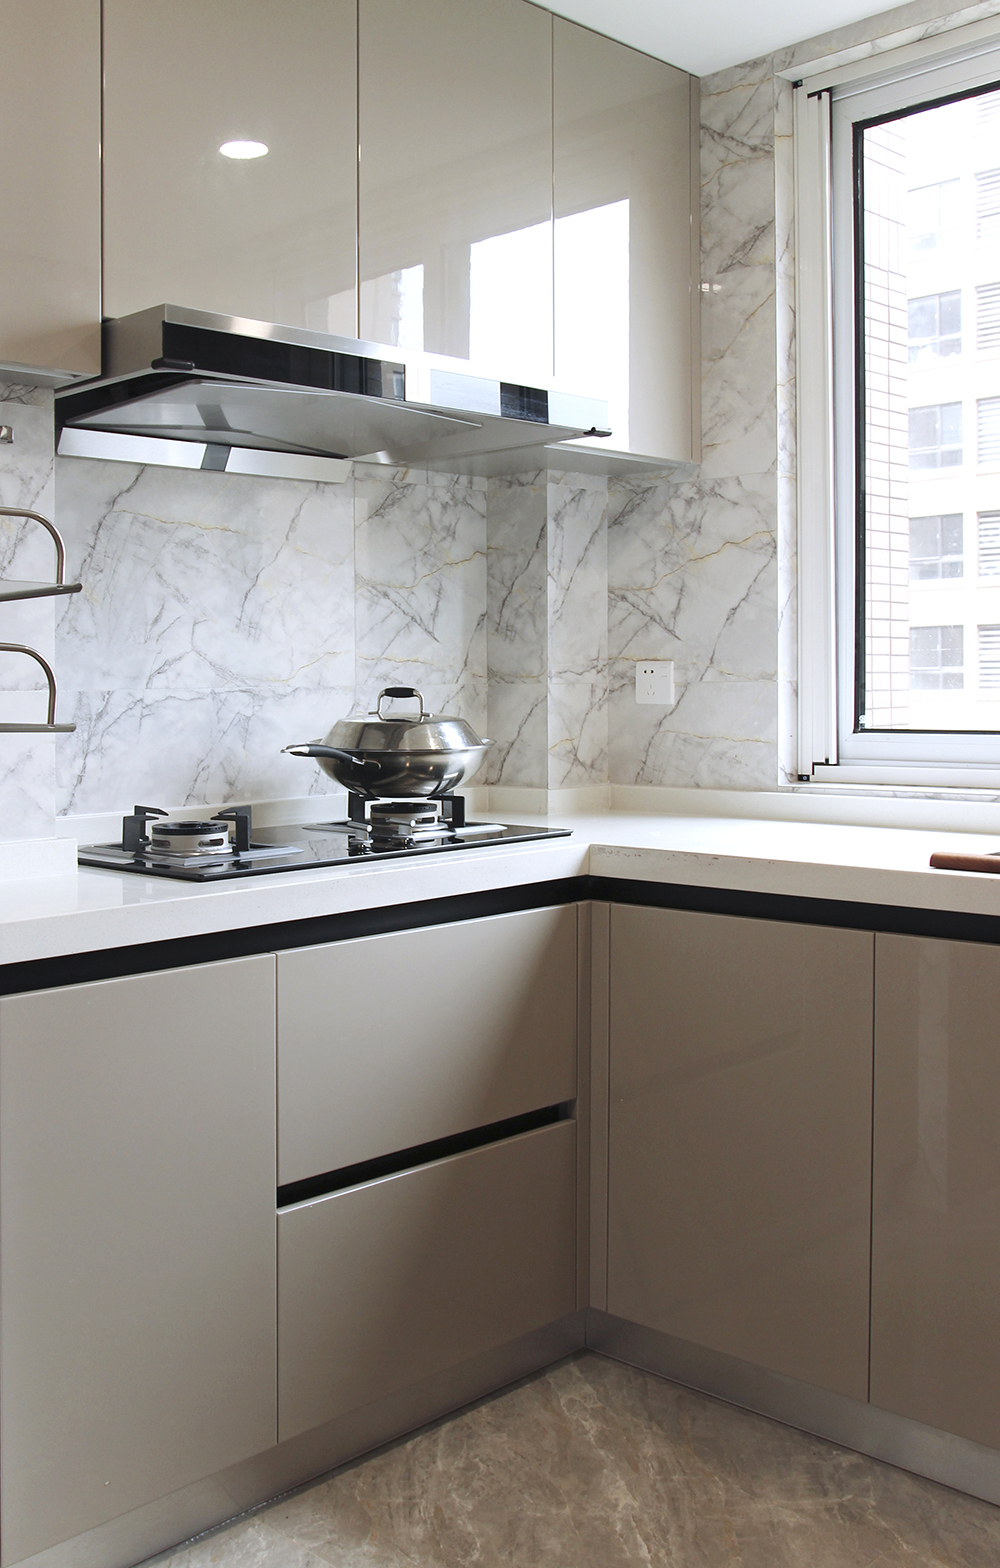 厨房选用白色整体橱柜搭配黑色的厨具,干净利落,墙砖